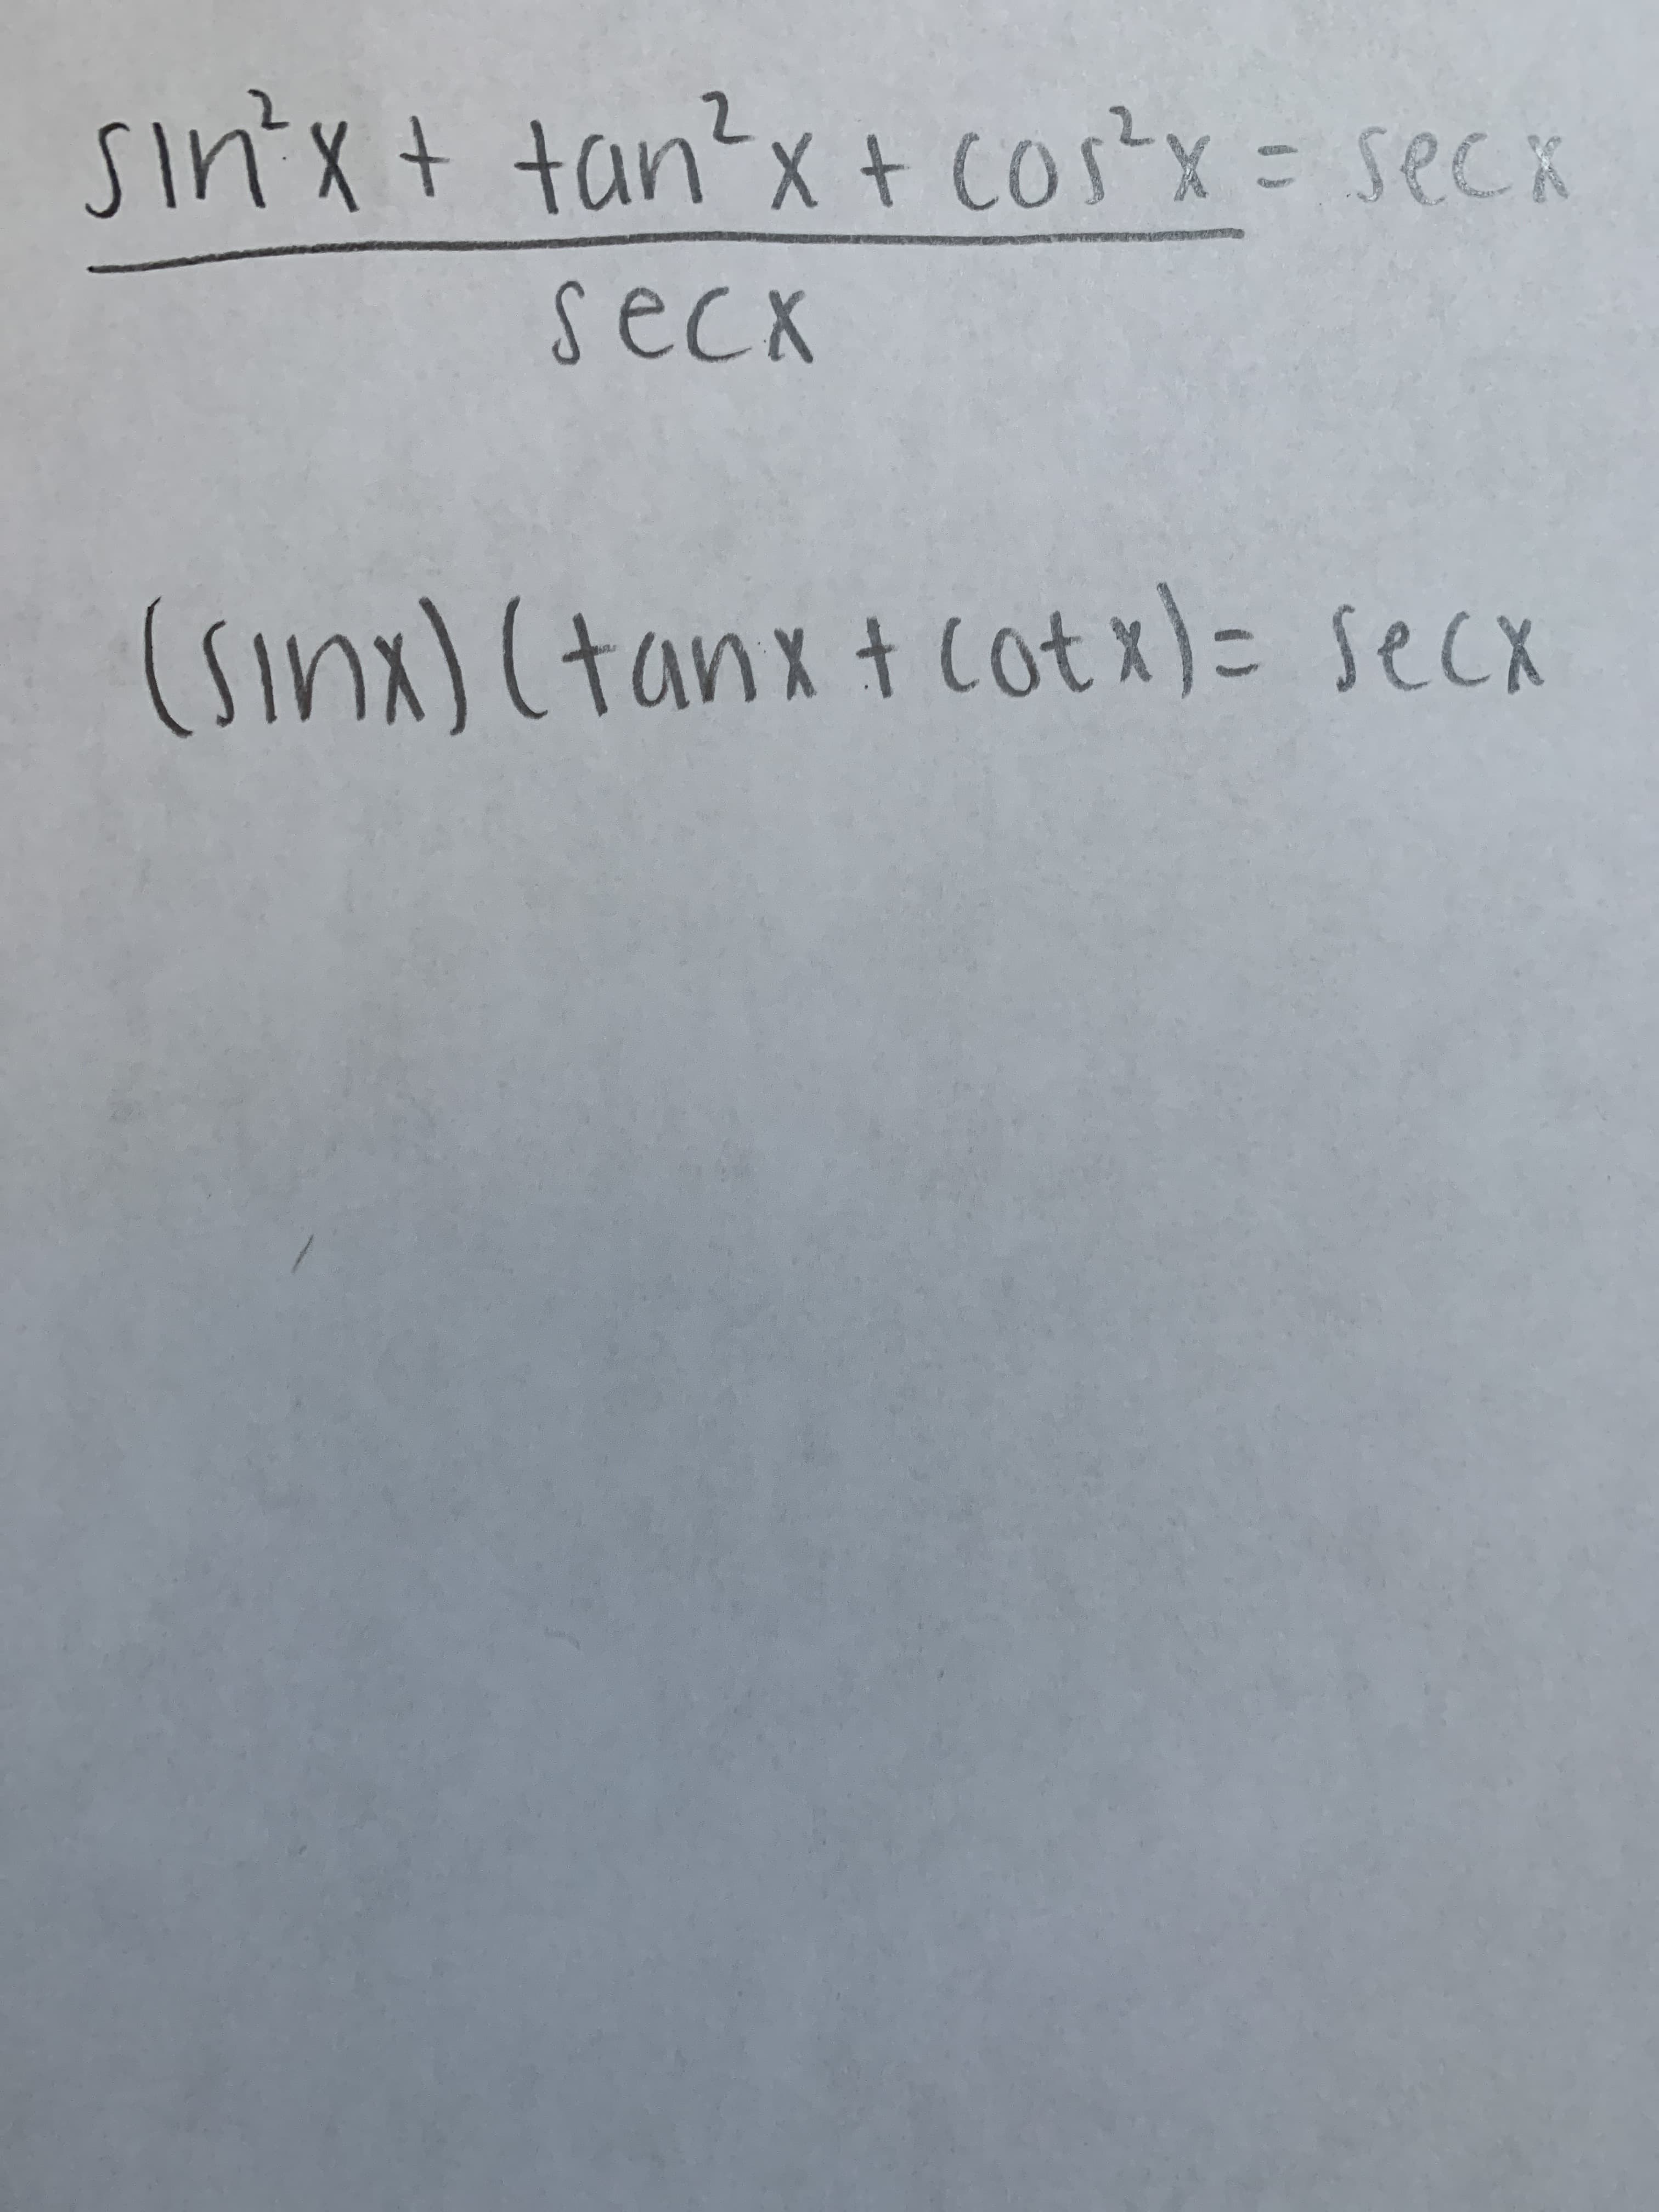 sin'x+ tan?x + cos x = seck
Gase
seck
(Sinx) (tanx t cotx)= secx
